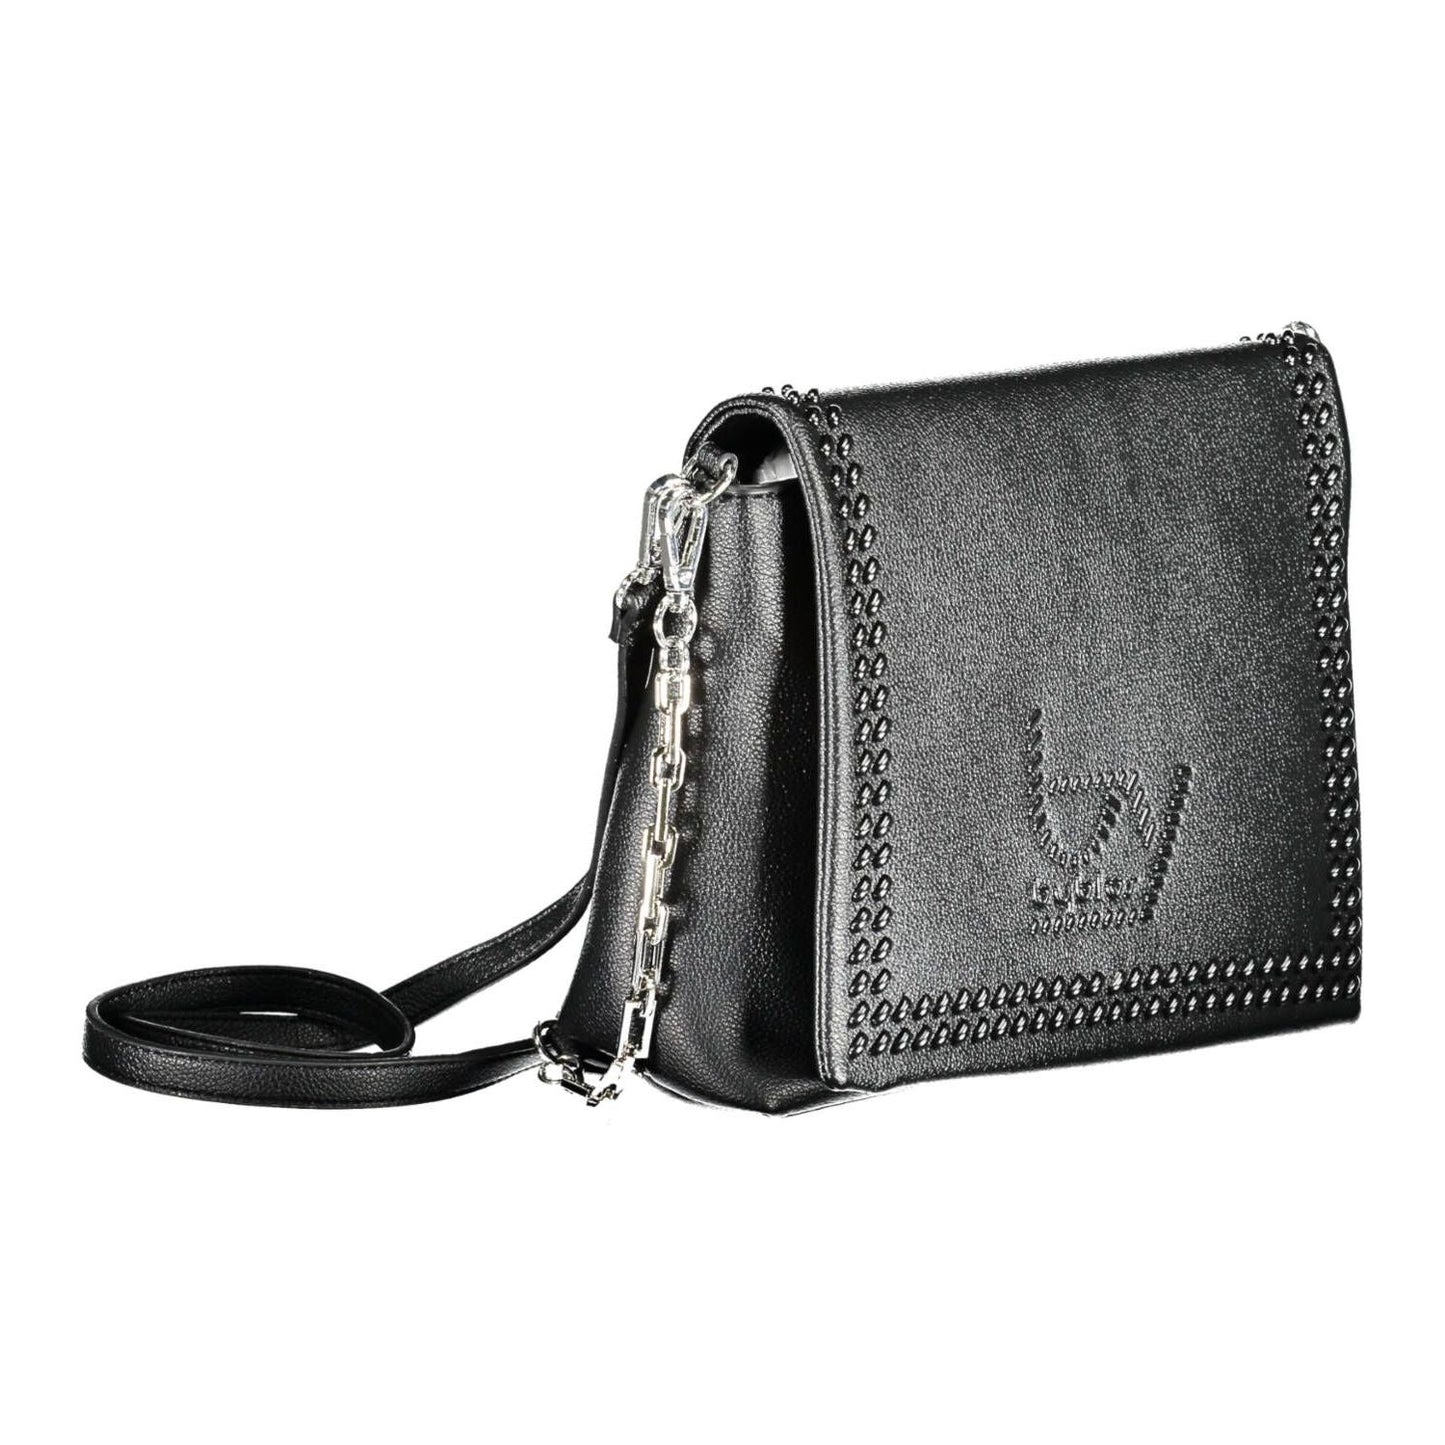 BYBLOS Elegant Chain-Handle Black Shoulder Bag elegant-chain-handle-black-shoulder-bag-1